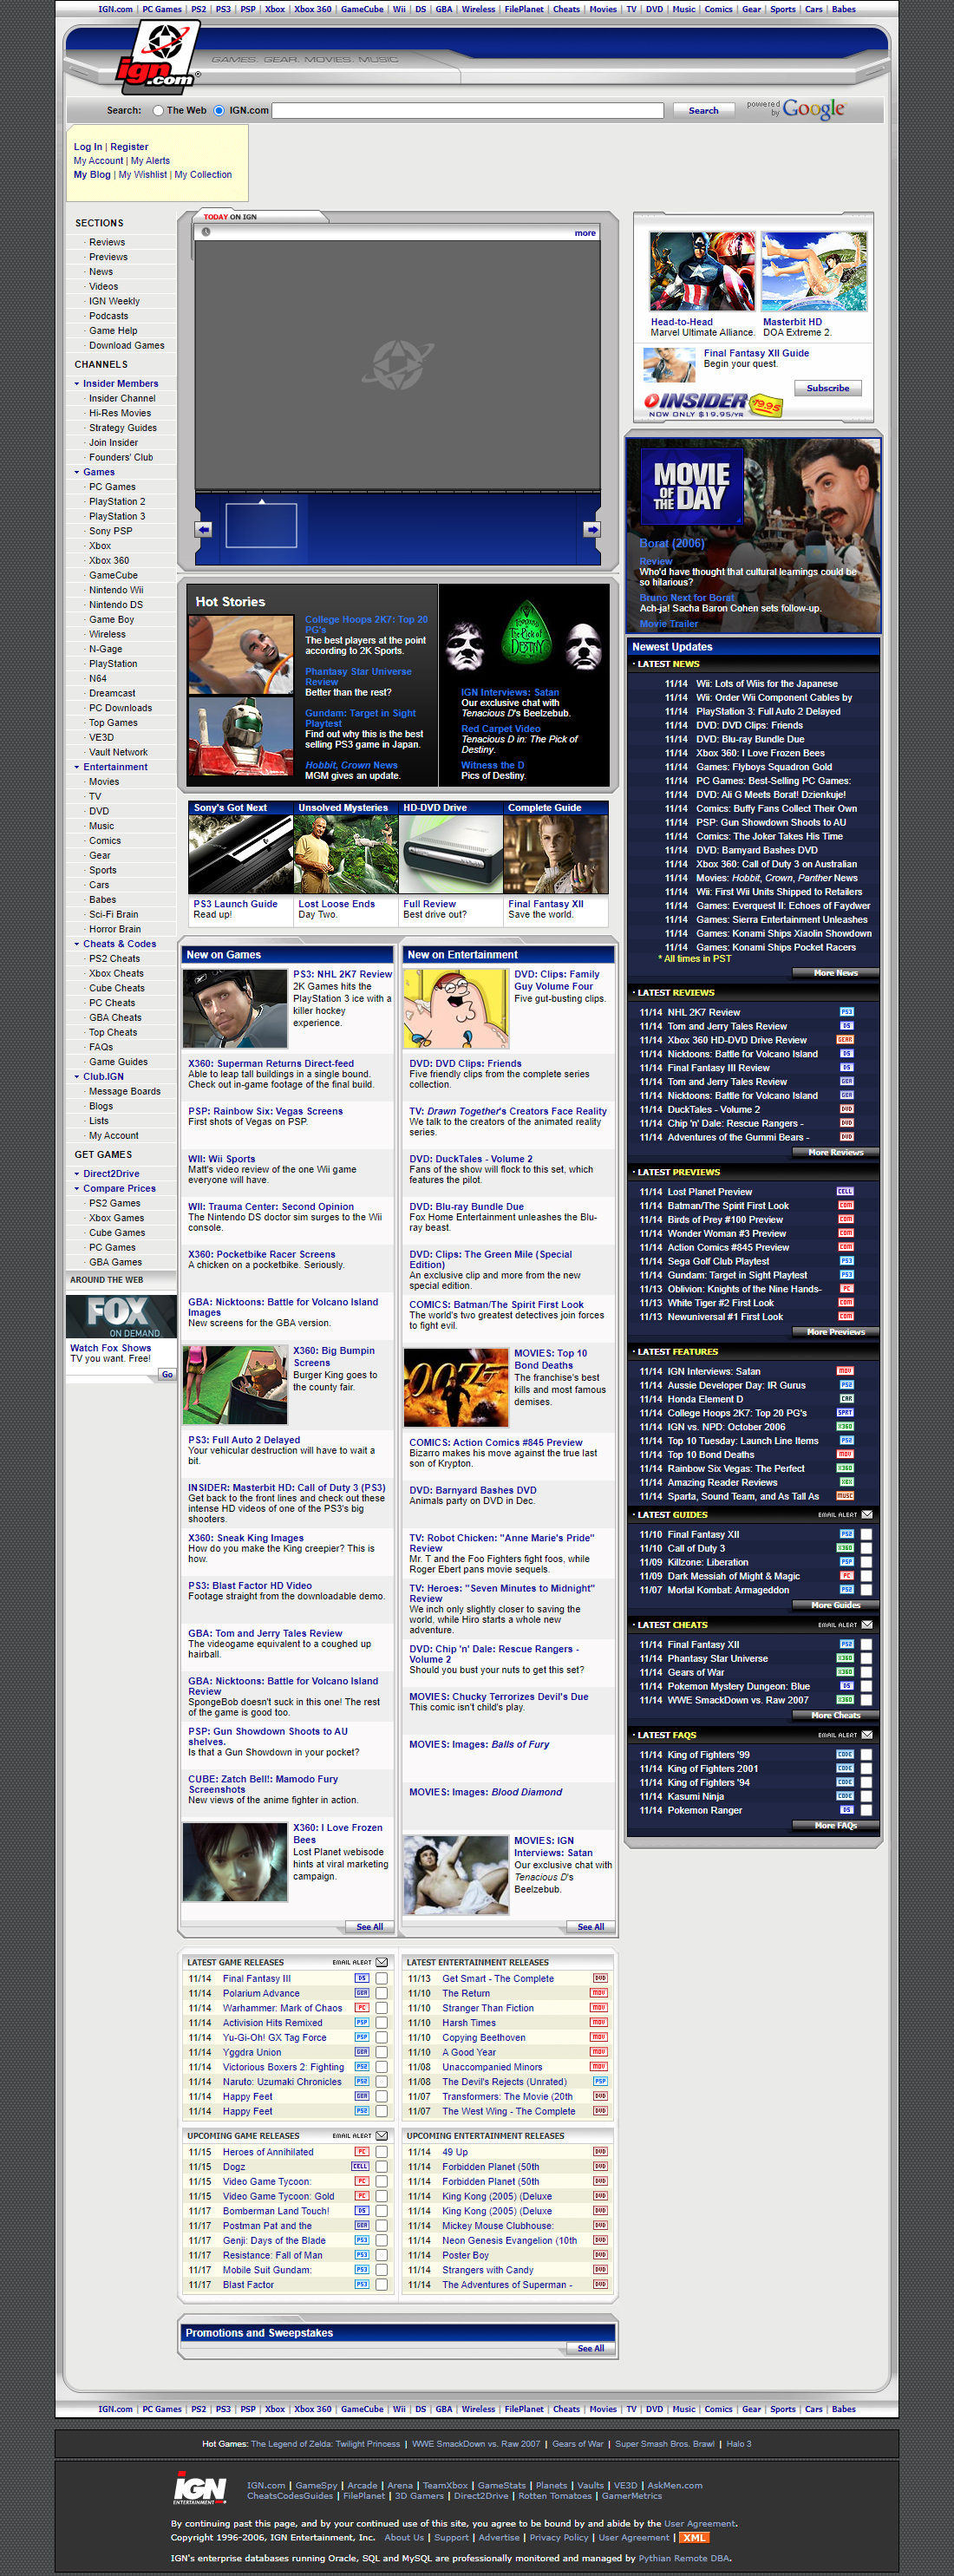 IGN in 2006